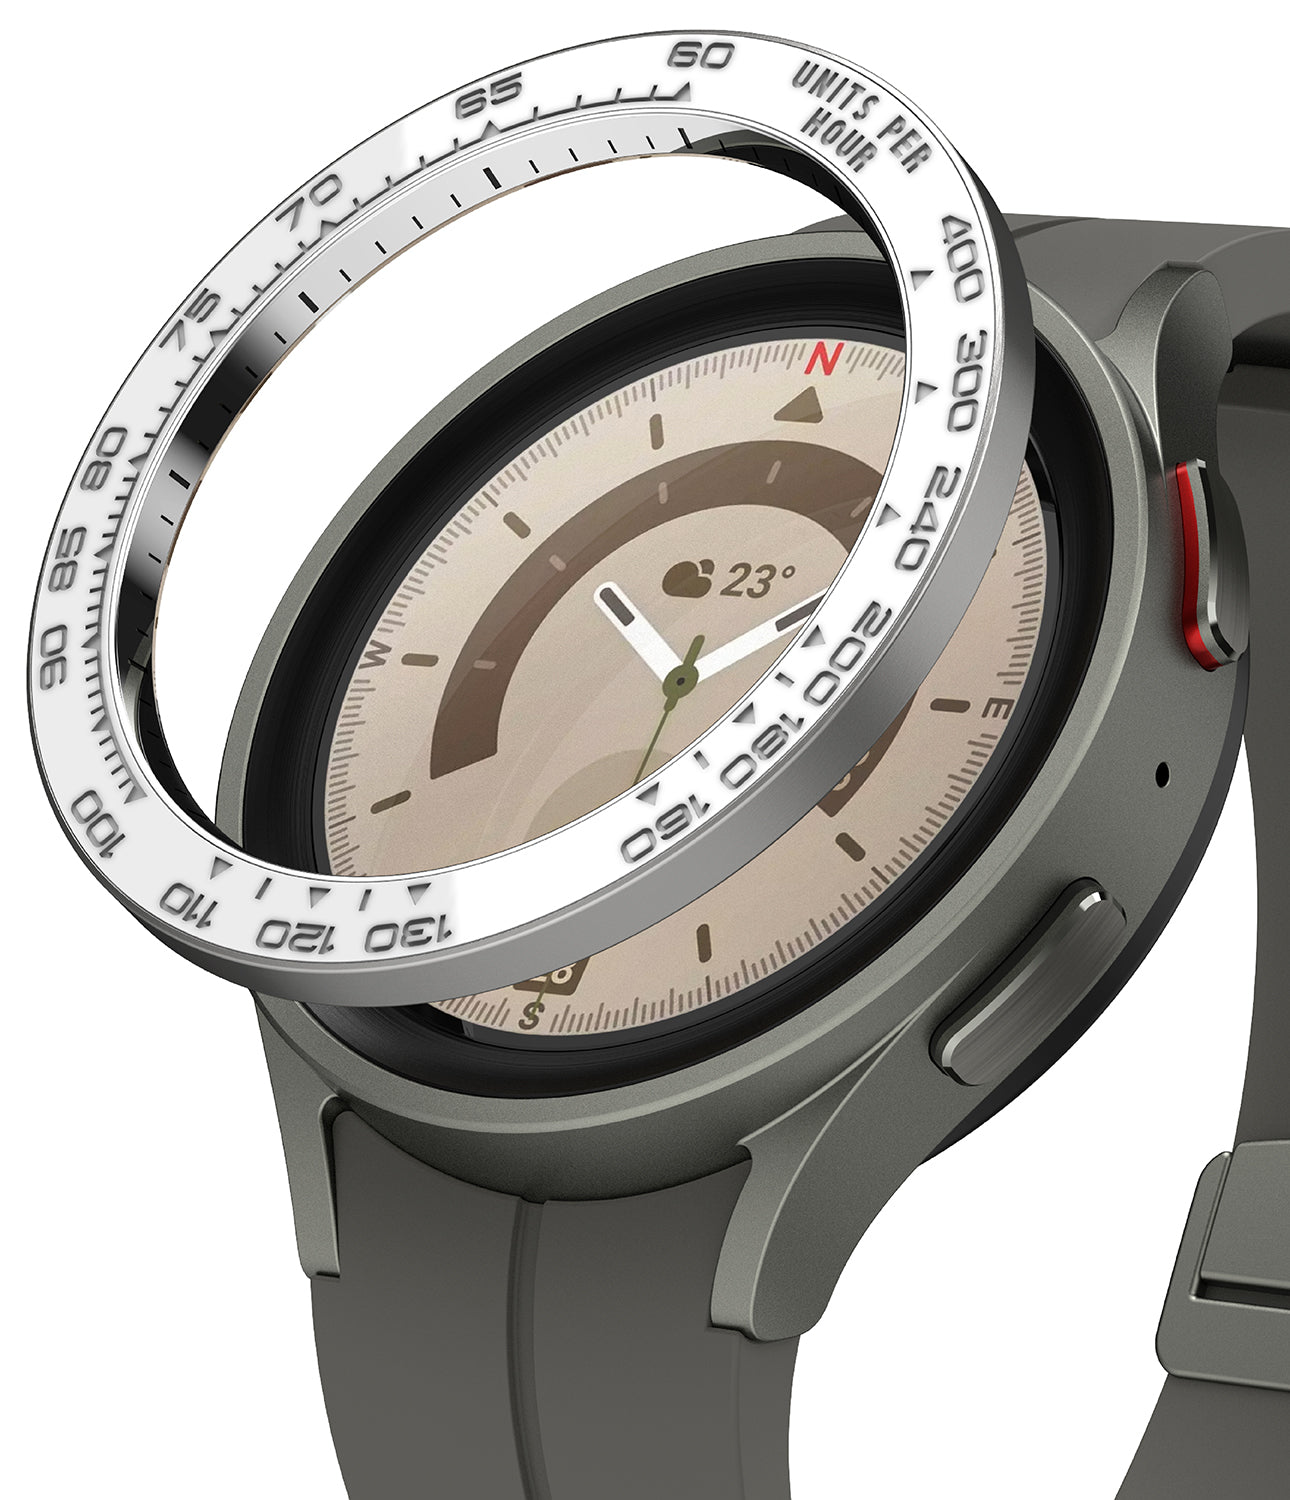 Galaxy Watch 5 Pro 45mm - Bezel Styling Premium - 45-97 Silver+White 